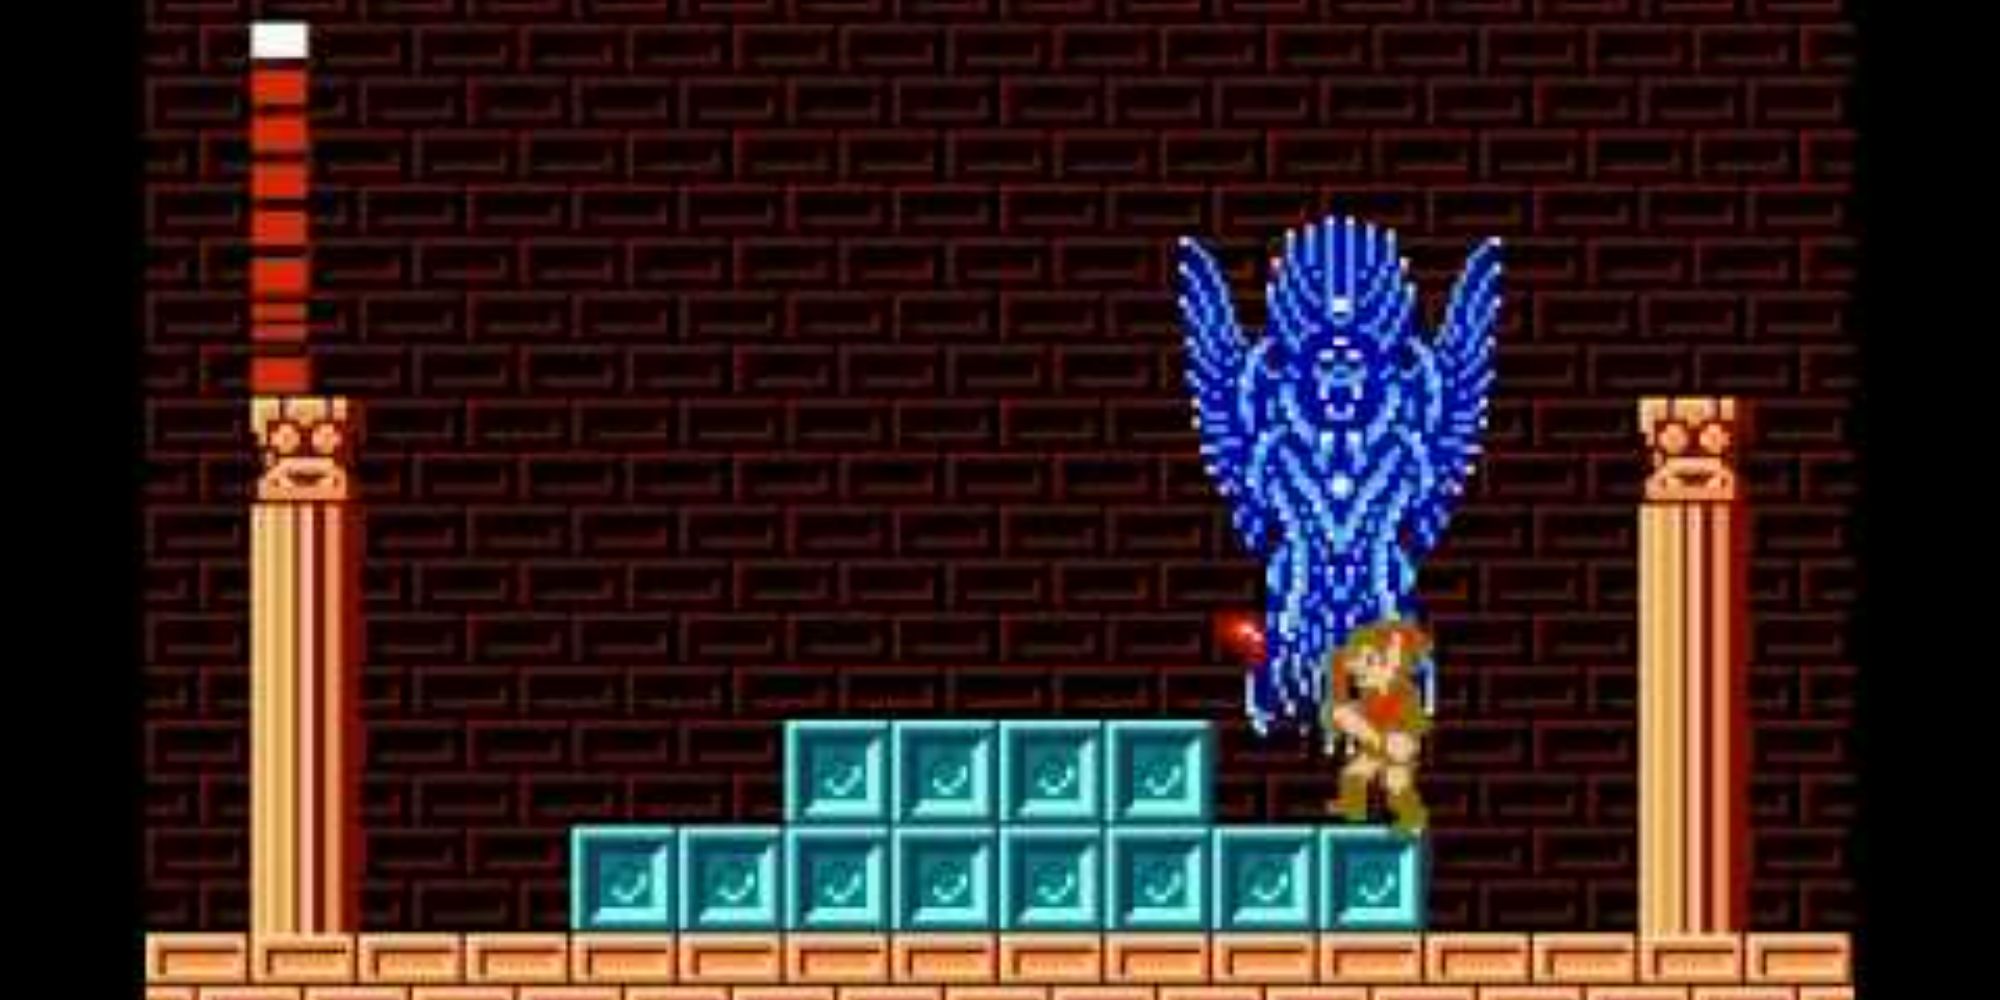 Link fighting Thunderbird in Zelda II